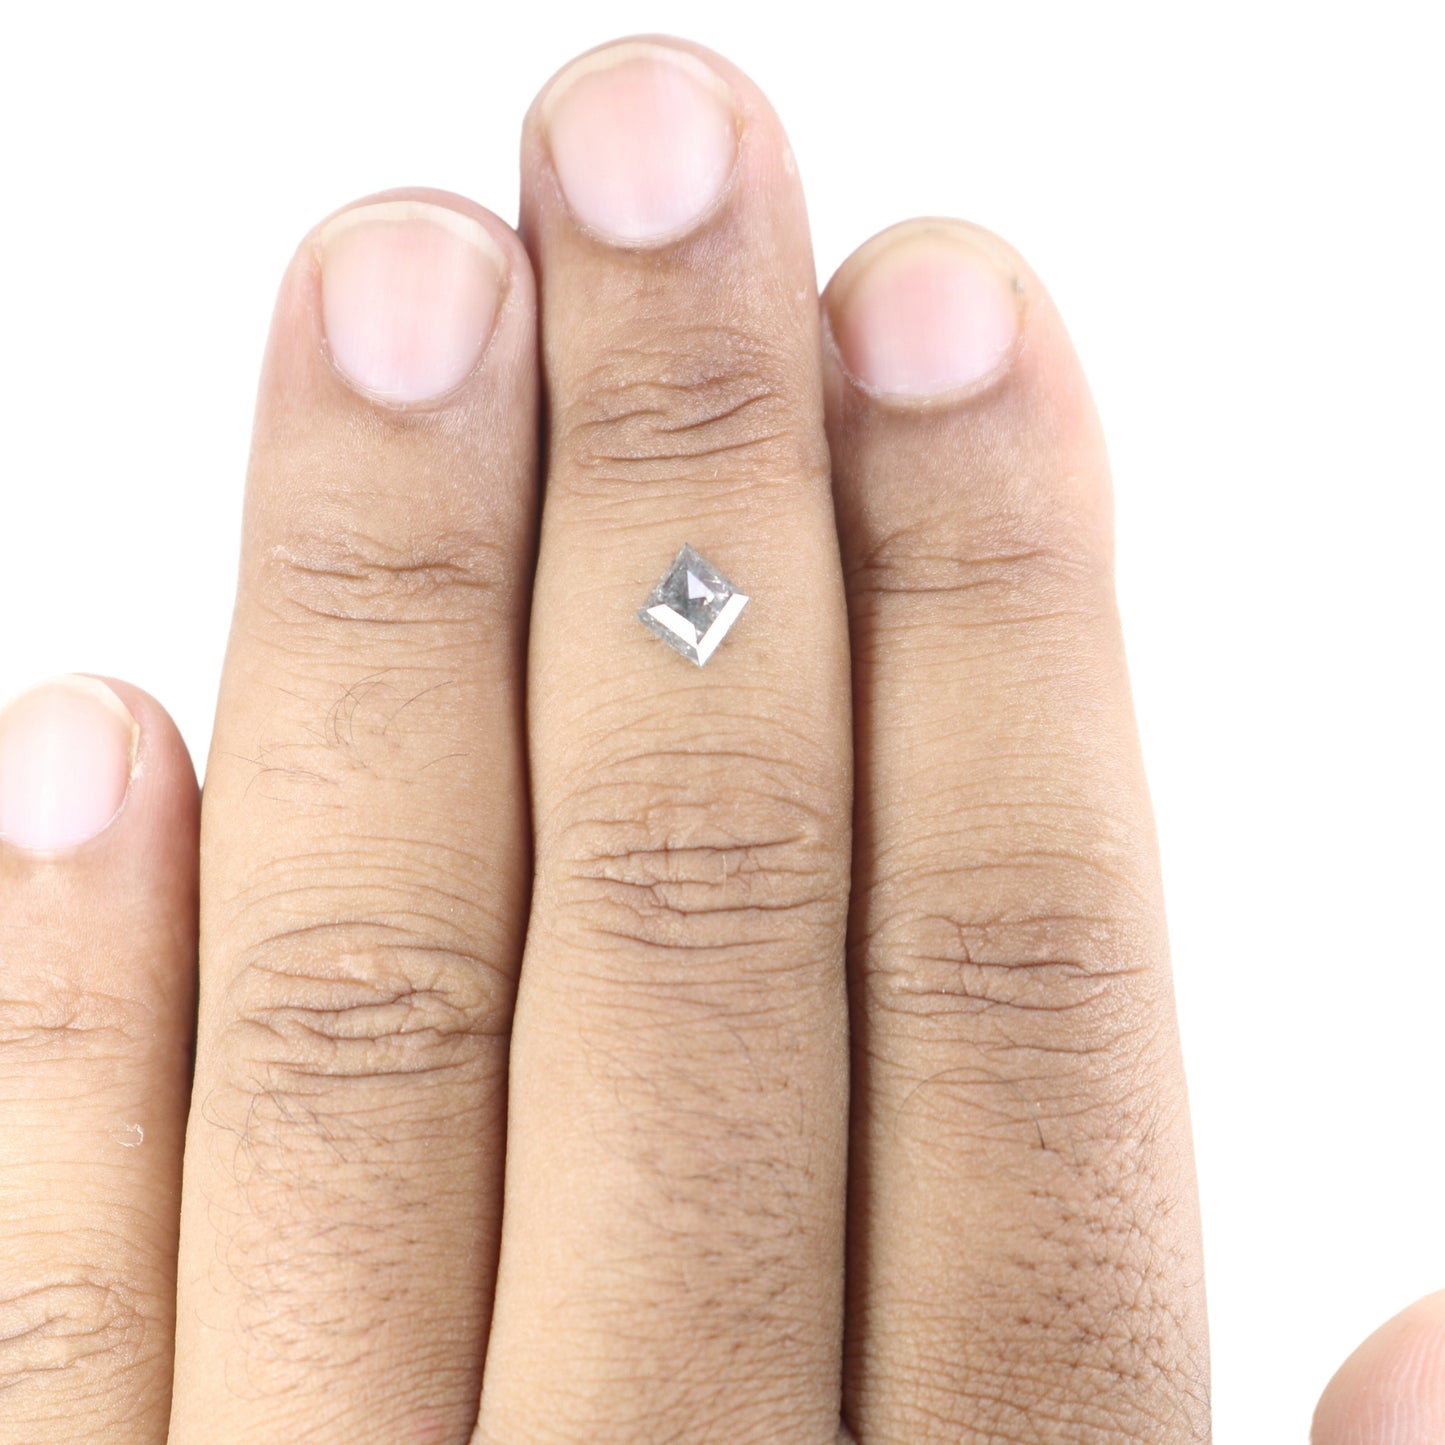 0.86 CT Salt And Pepper Kite Shape Diamond For Engagement Ring | Gift For Wife | Gift For Girl Friend